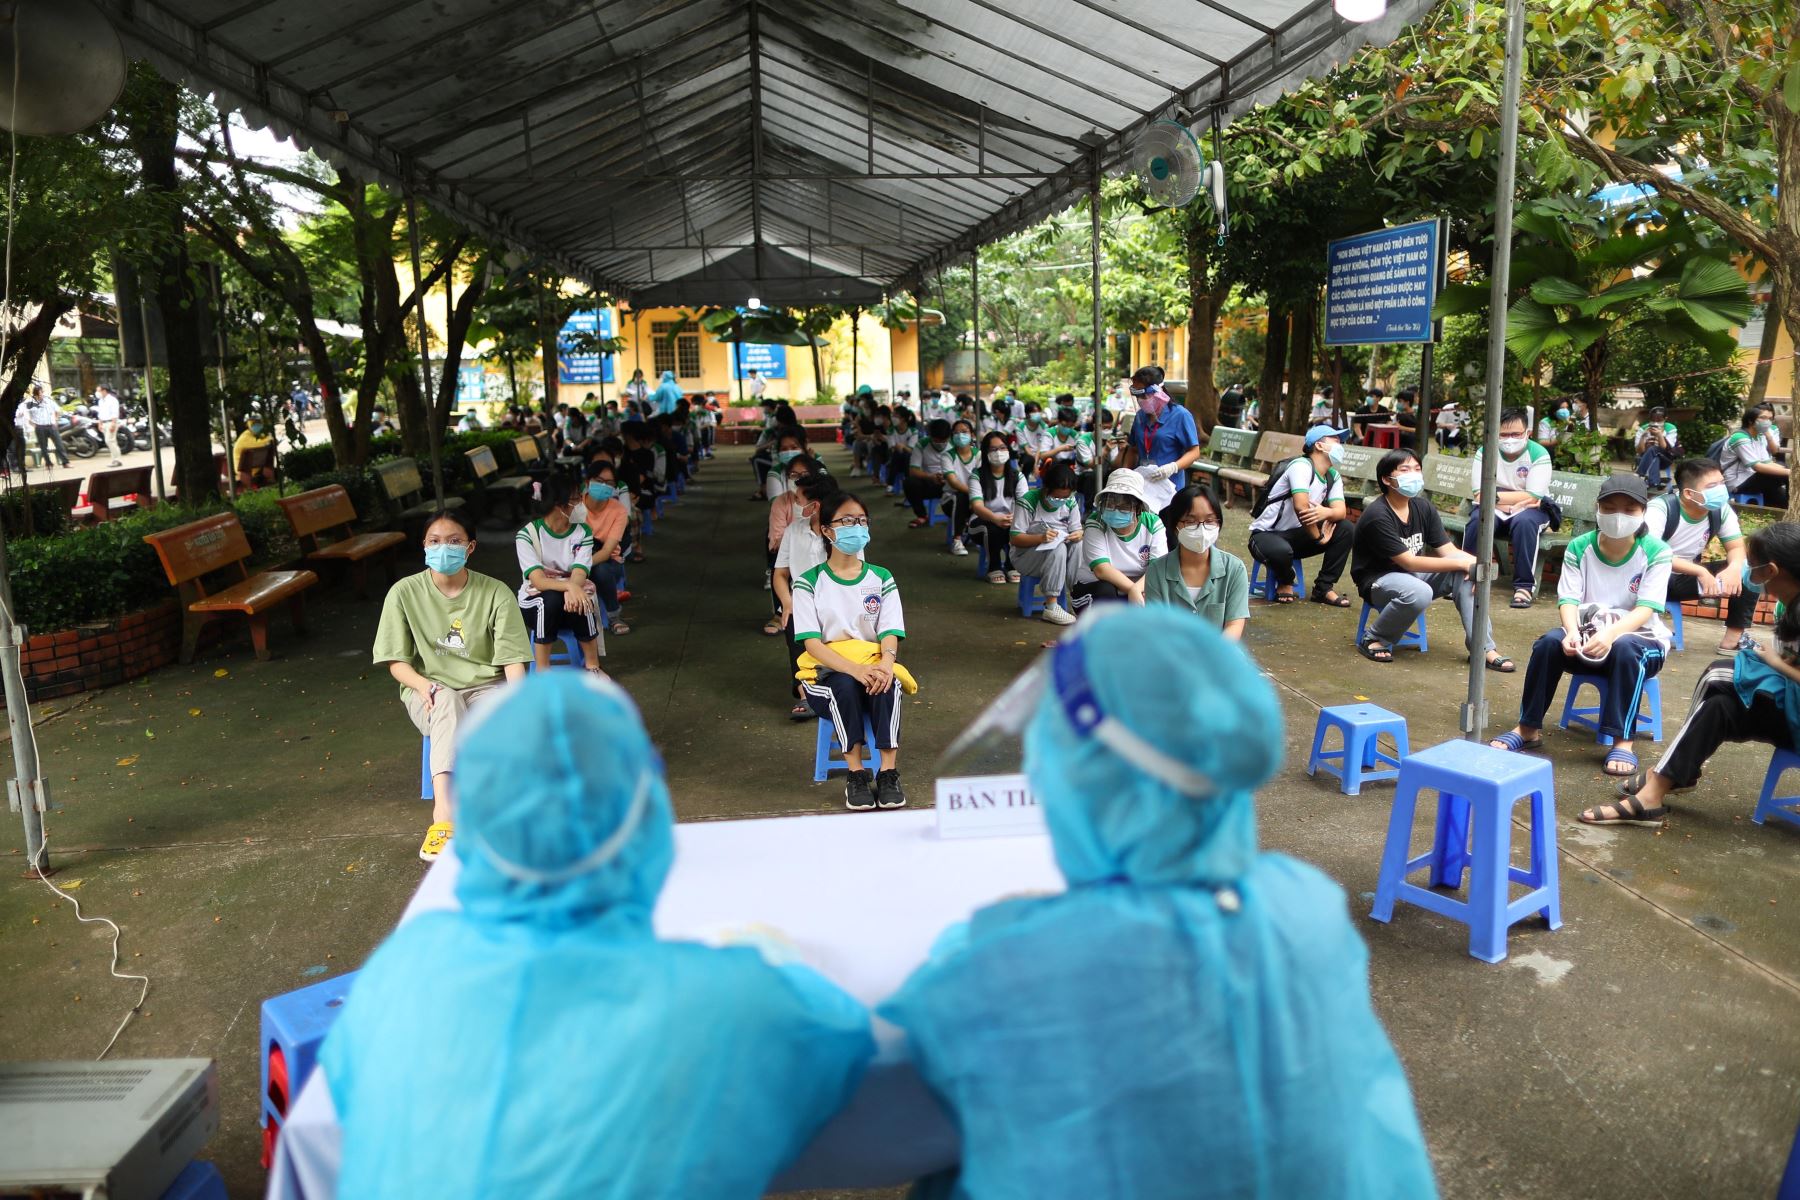 Los jóvenes esperan recibir la vacuna contra el coronavirus Pfizer-BioNTech Covid-19 en la escuela primaria de Cu Chi Town en la ciudad de Ho Chi Minh, en Vietnam comenzó a vacunar a adolescentes de entre 12 y 17 años.
Foto: AFP